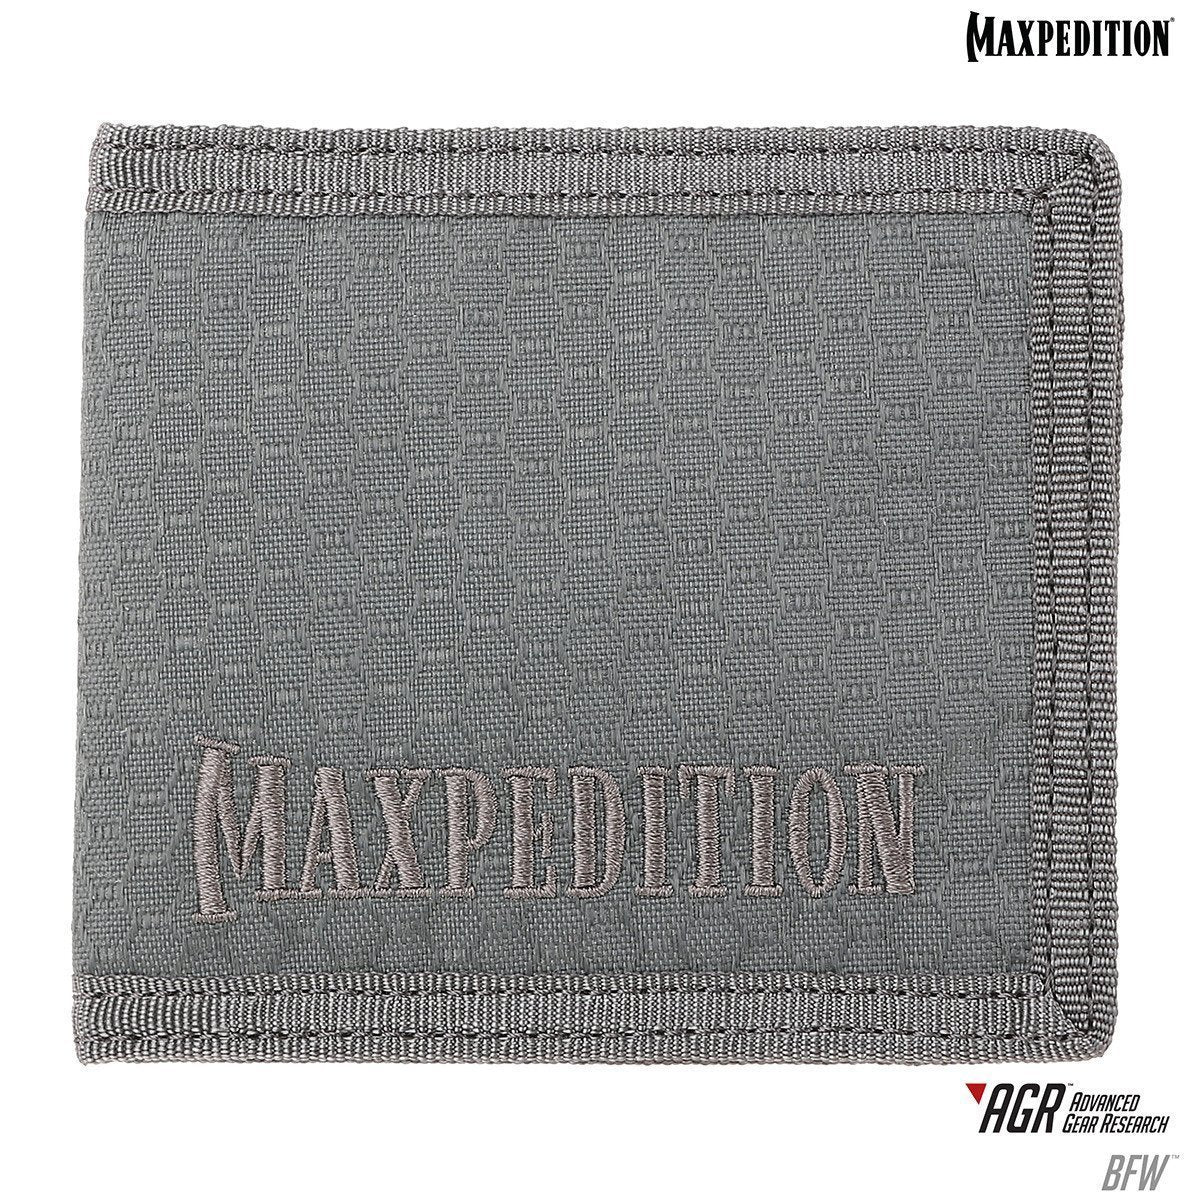 Maxpedition BFW Bi-Fold Wallet Accessories Maxpedition Tactical Gear Supplier Tactical Distributors Australia